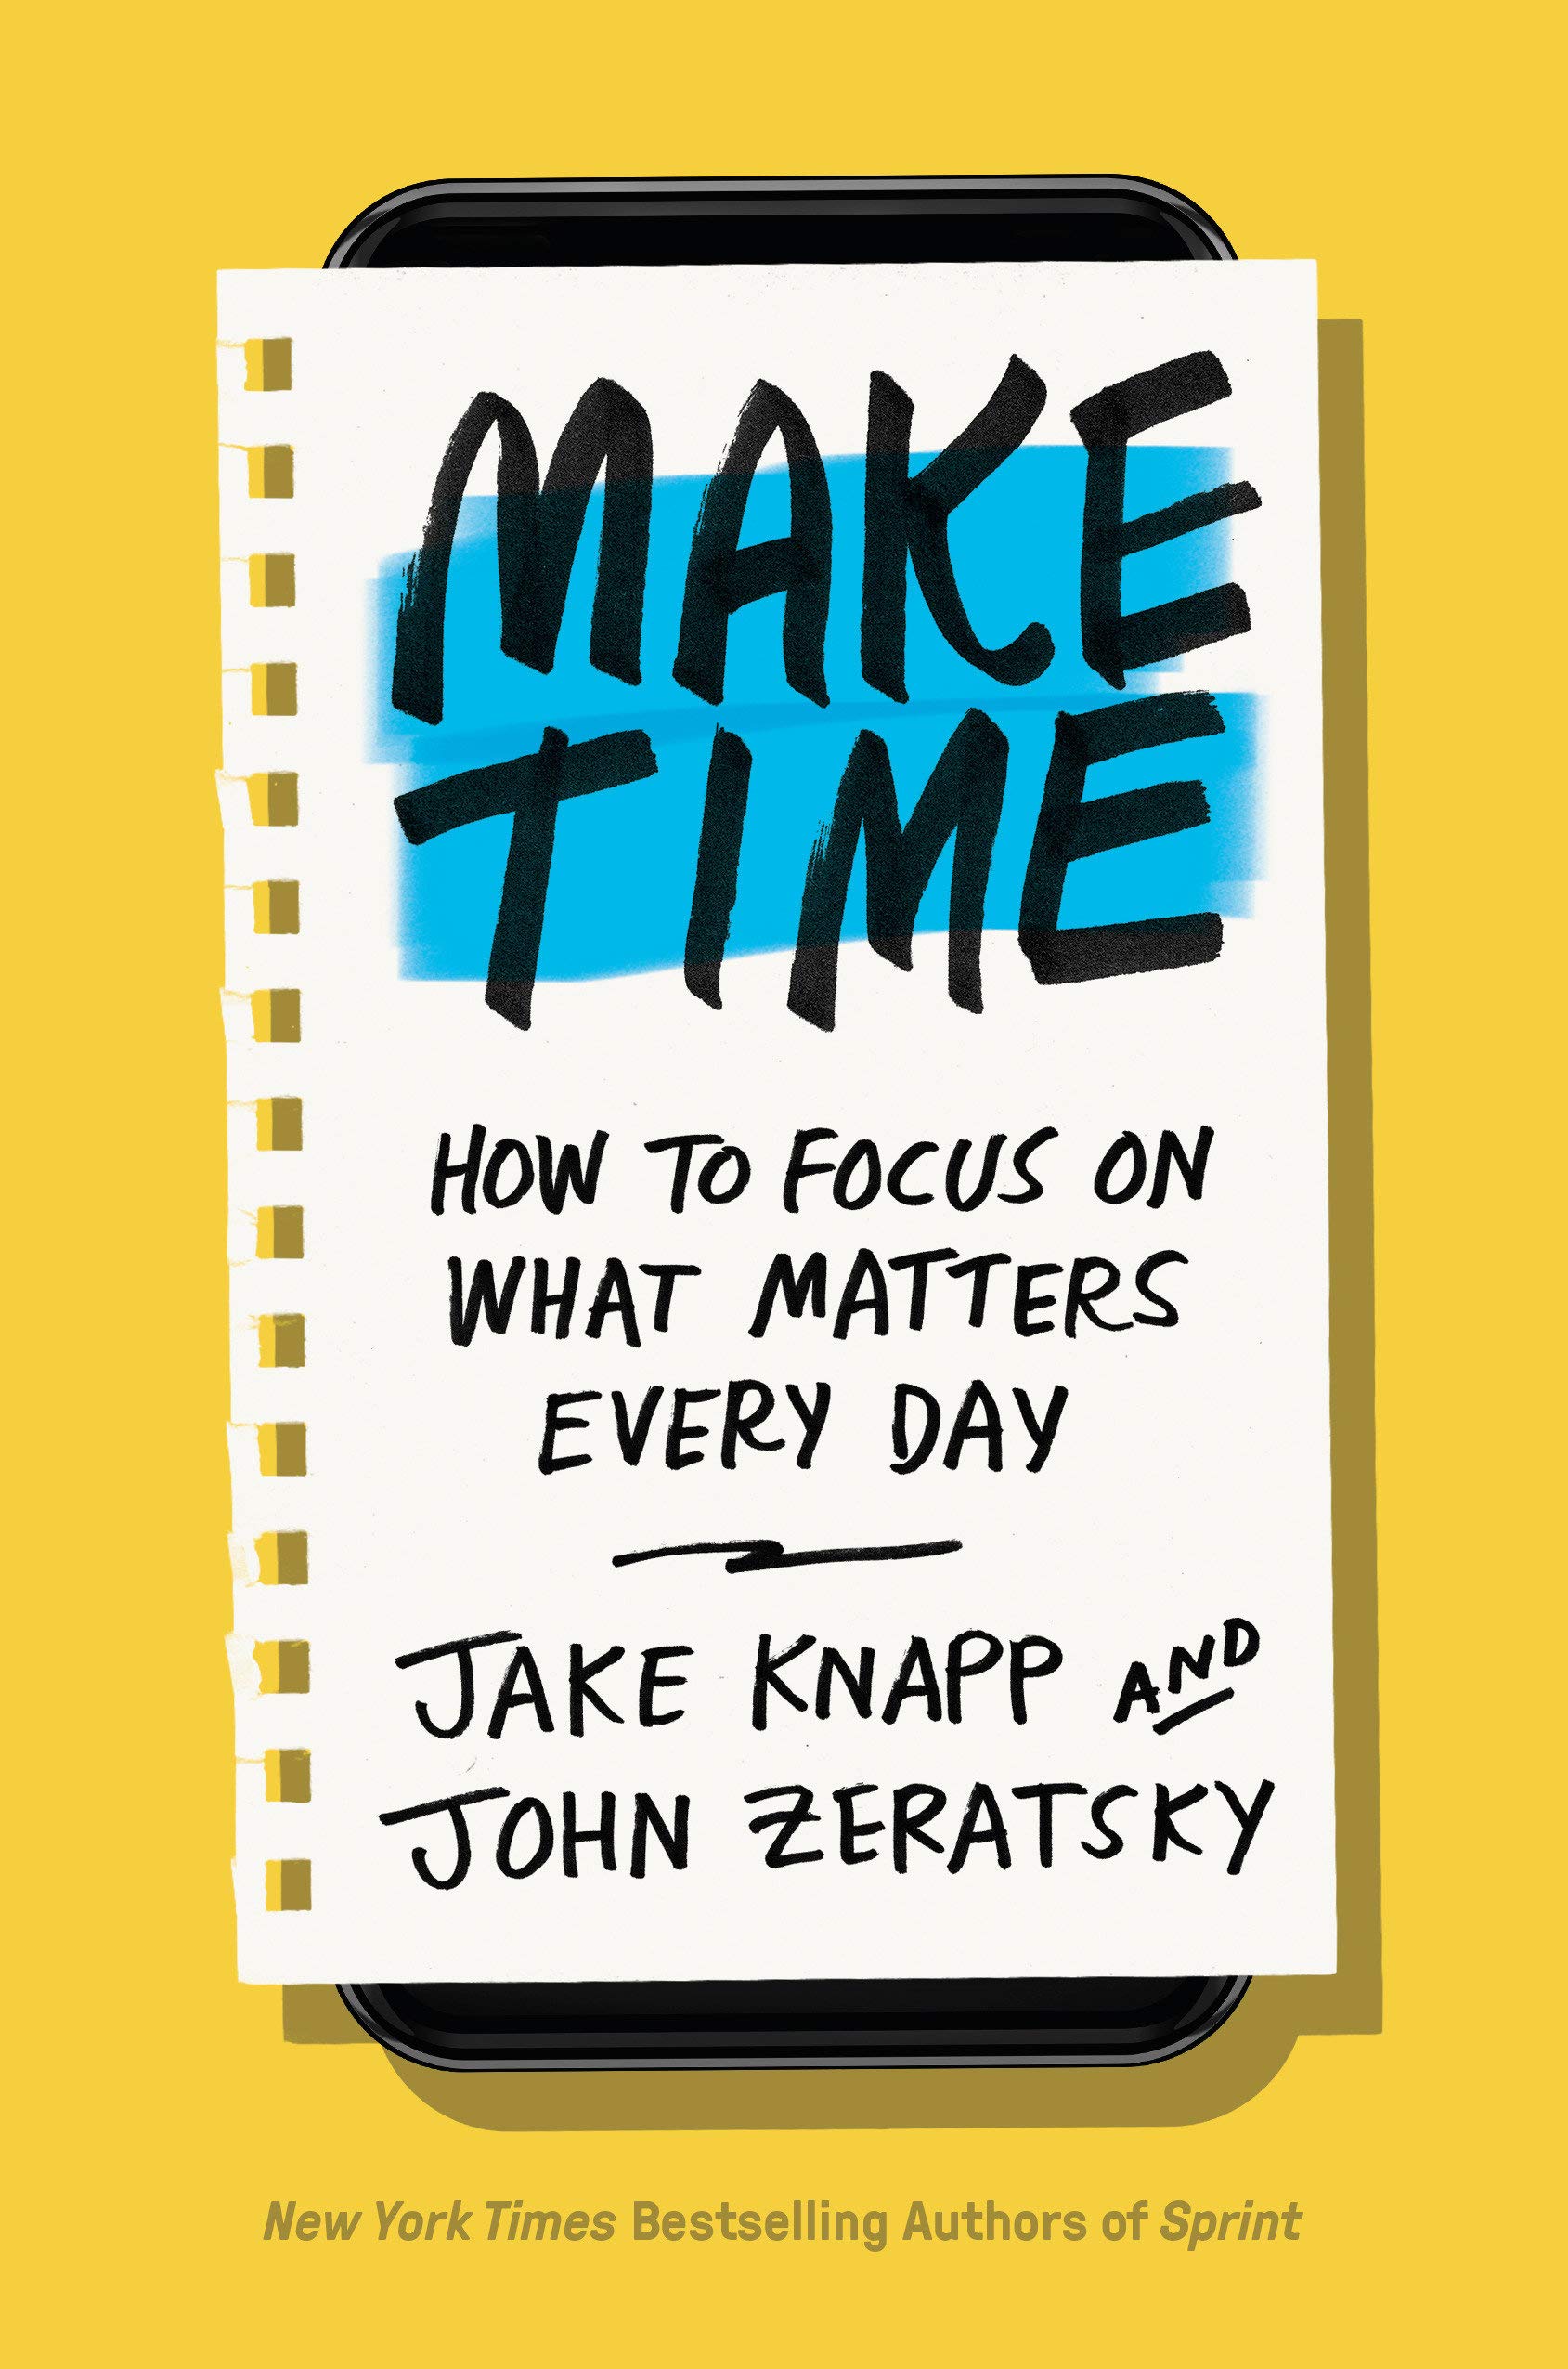 Make time by Jake Knapp and John Zeratsky